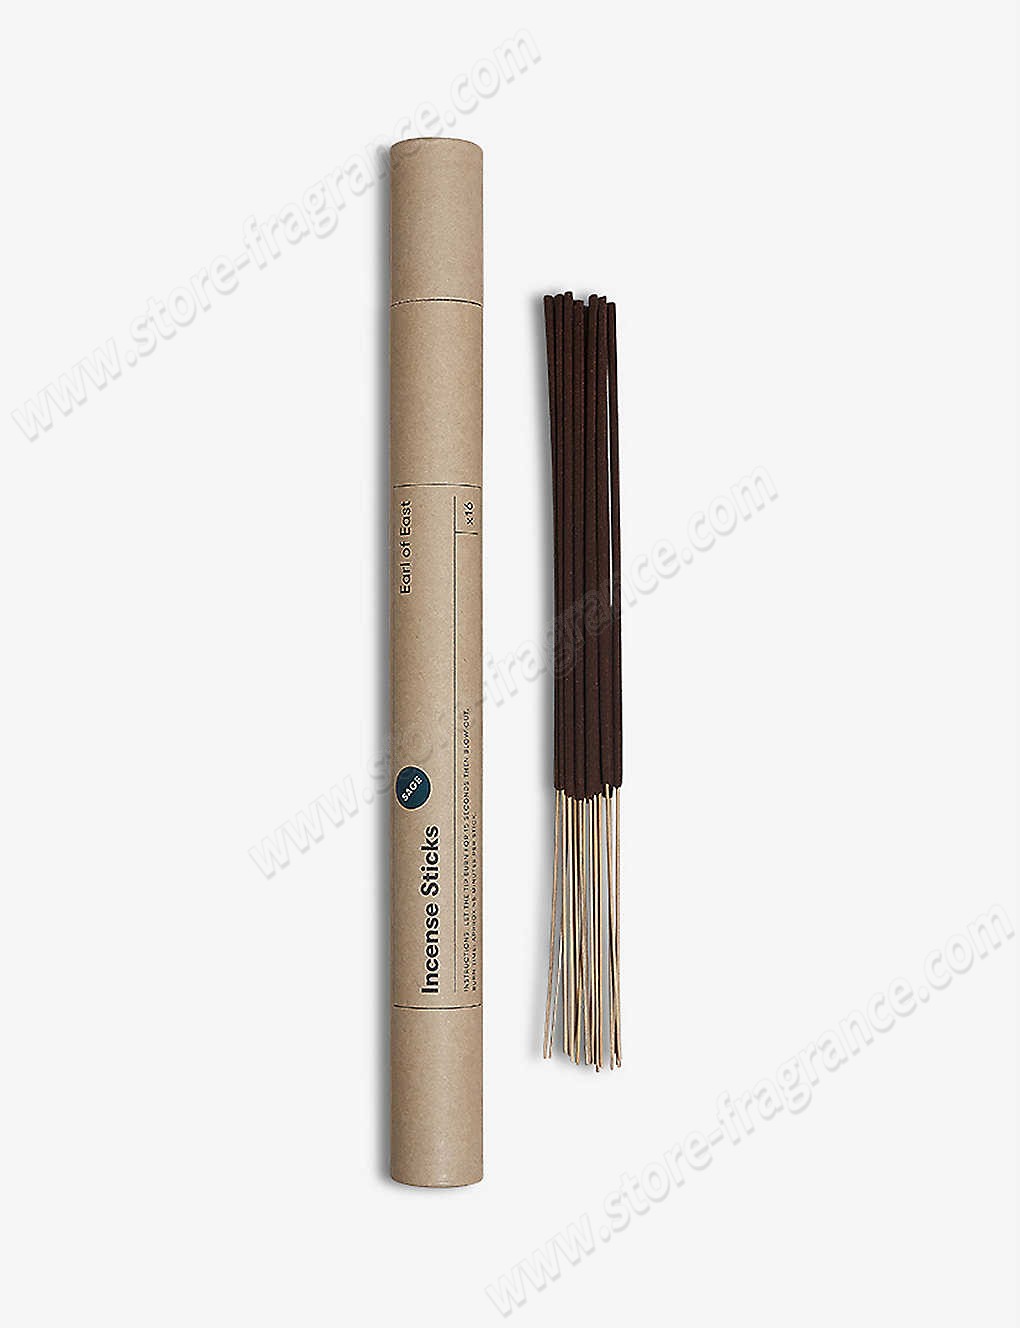 EARL OF EAST/Sage incense sticks pack of 16 Limit Offer - EARL OF EAST/Sage incense sticks pack of 16 Limit Offer